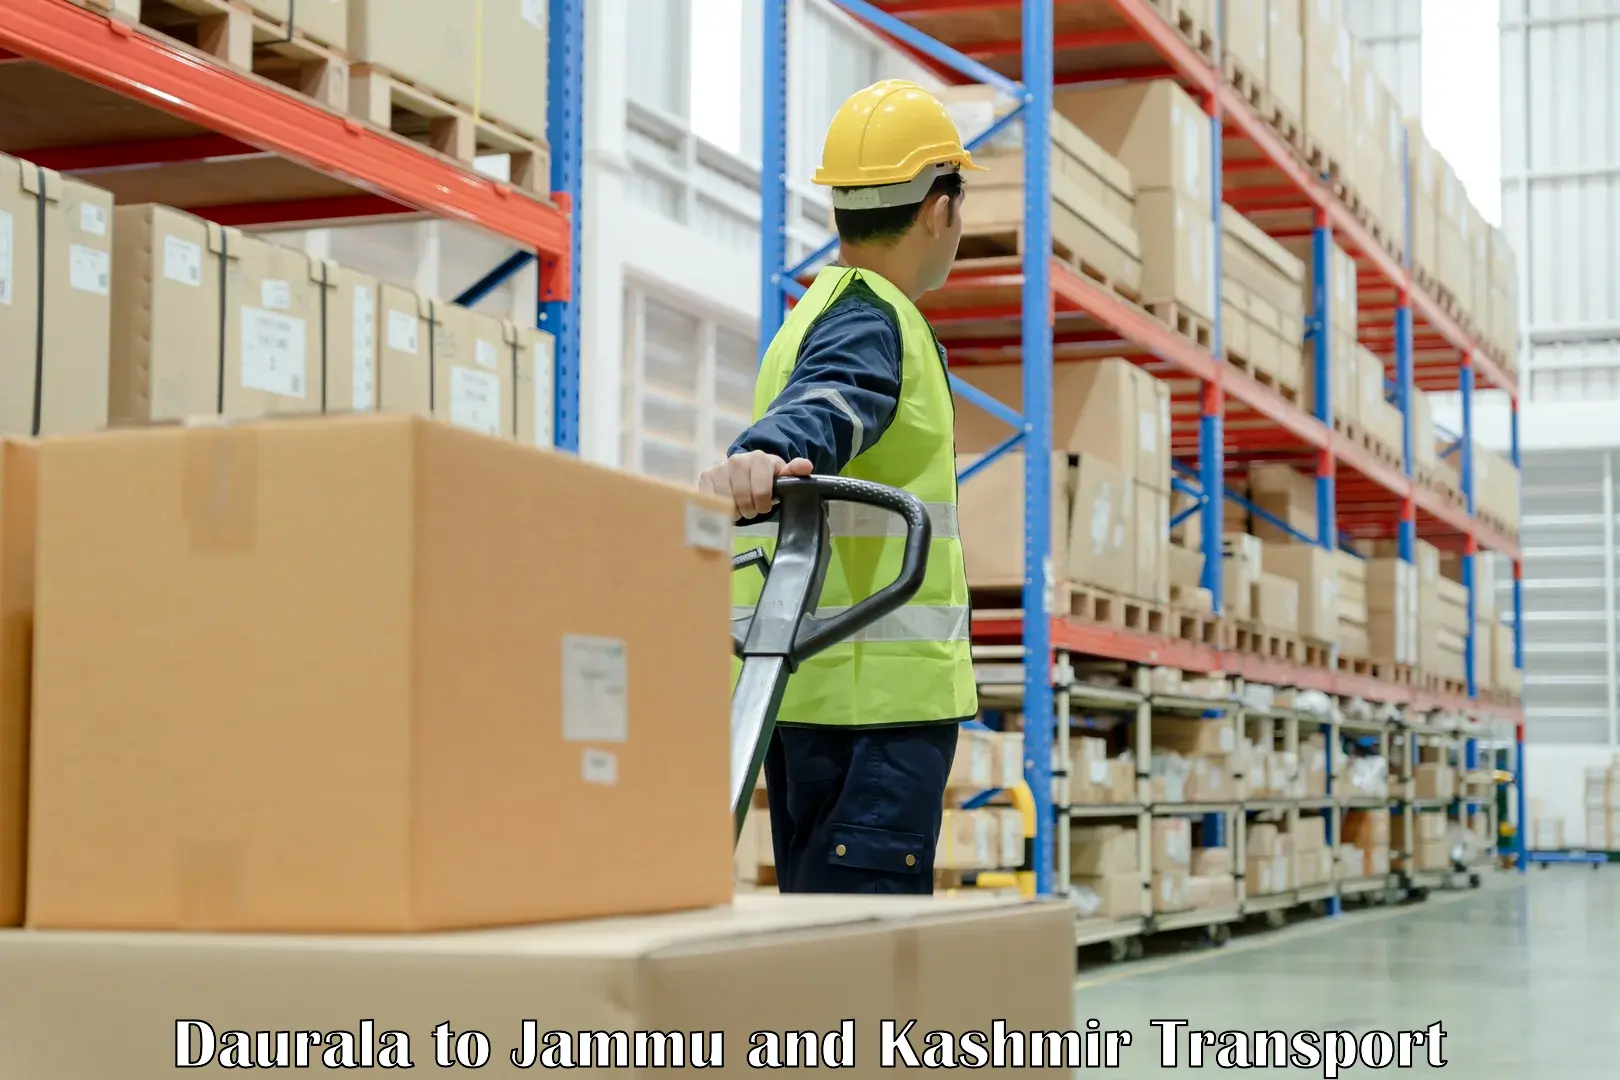 Shipping services Daurala to Srinagar Kashmir